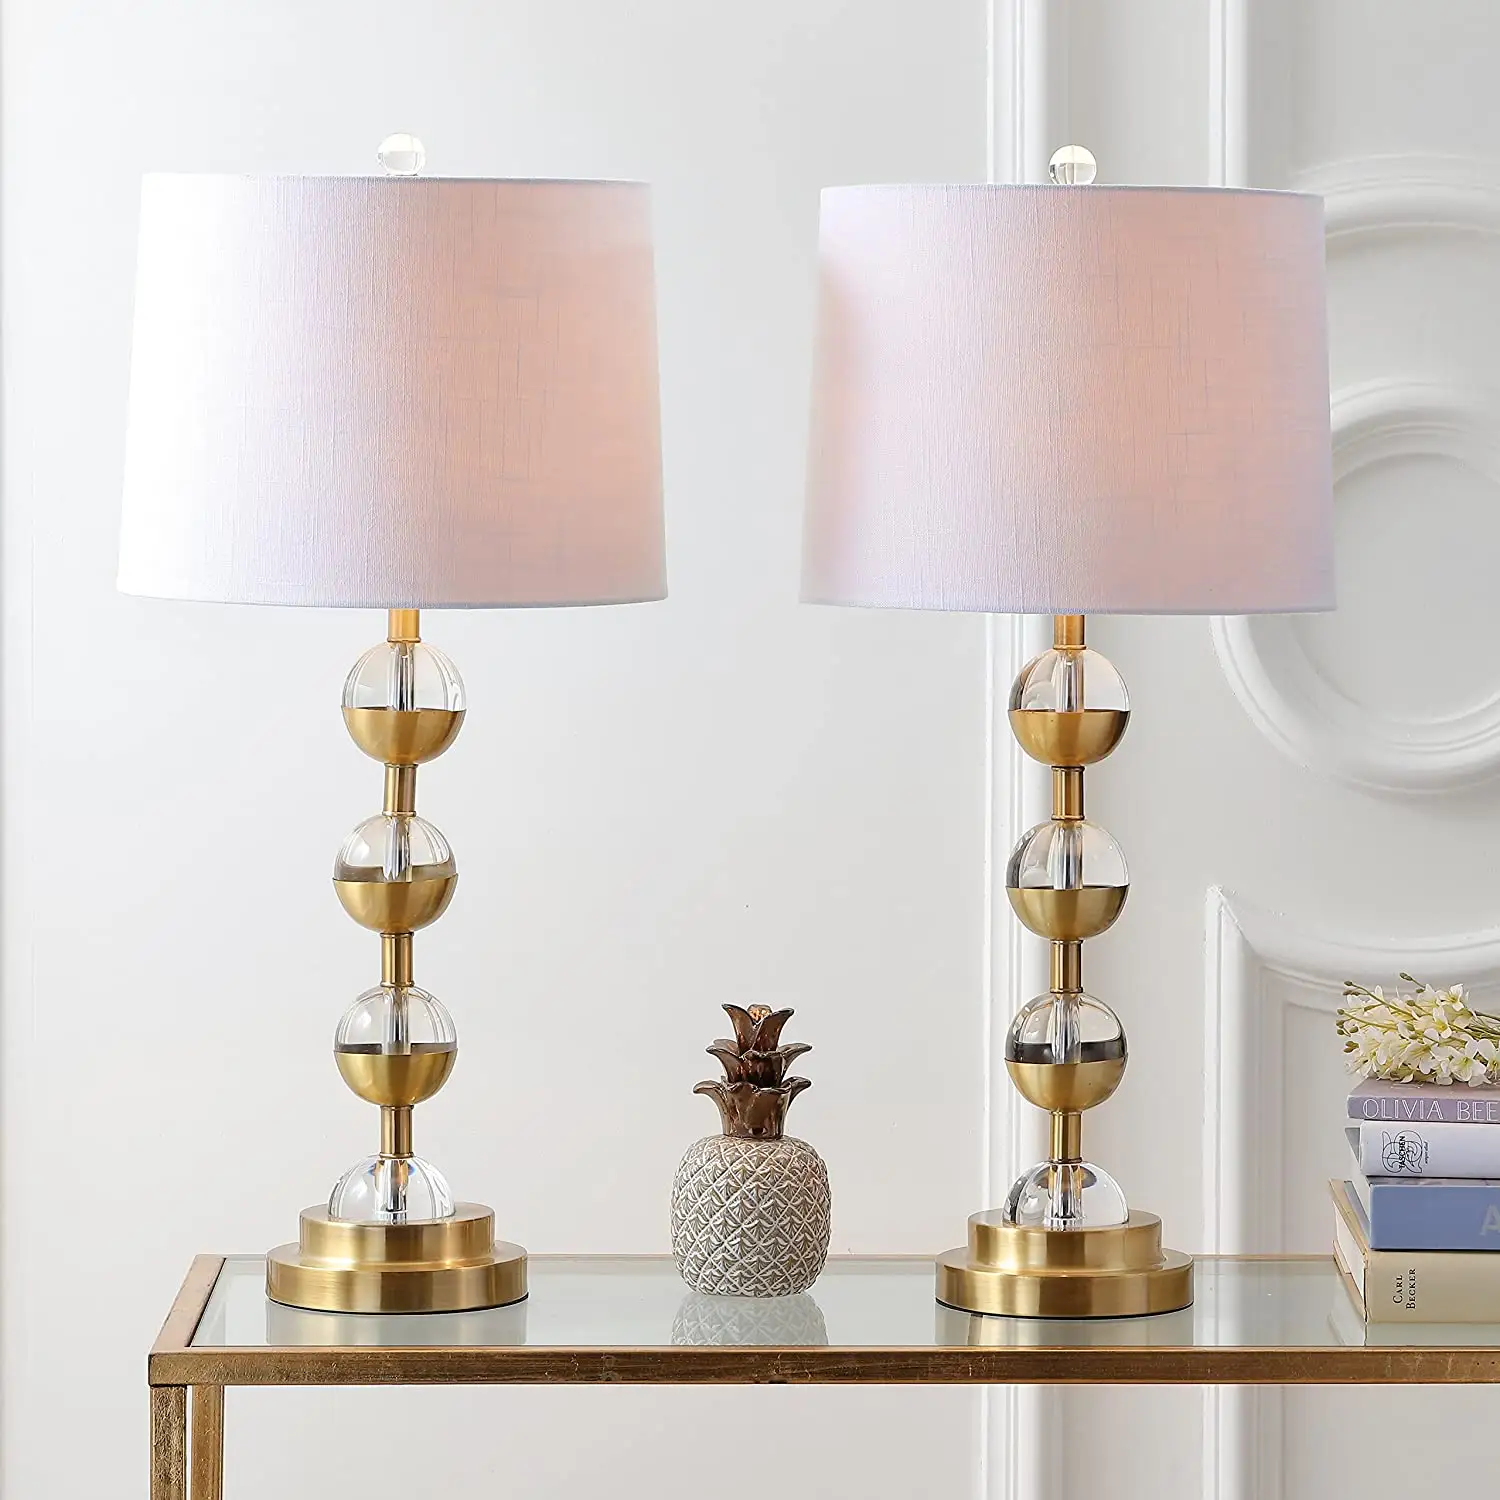 Lampe led en laiton et cristal doré, design moderne, pour une chambre à coucher, une Table de chevet, un salon ou une salle à manger